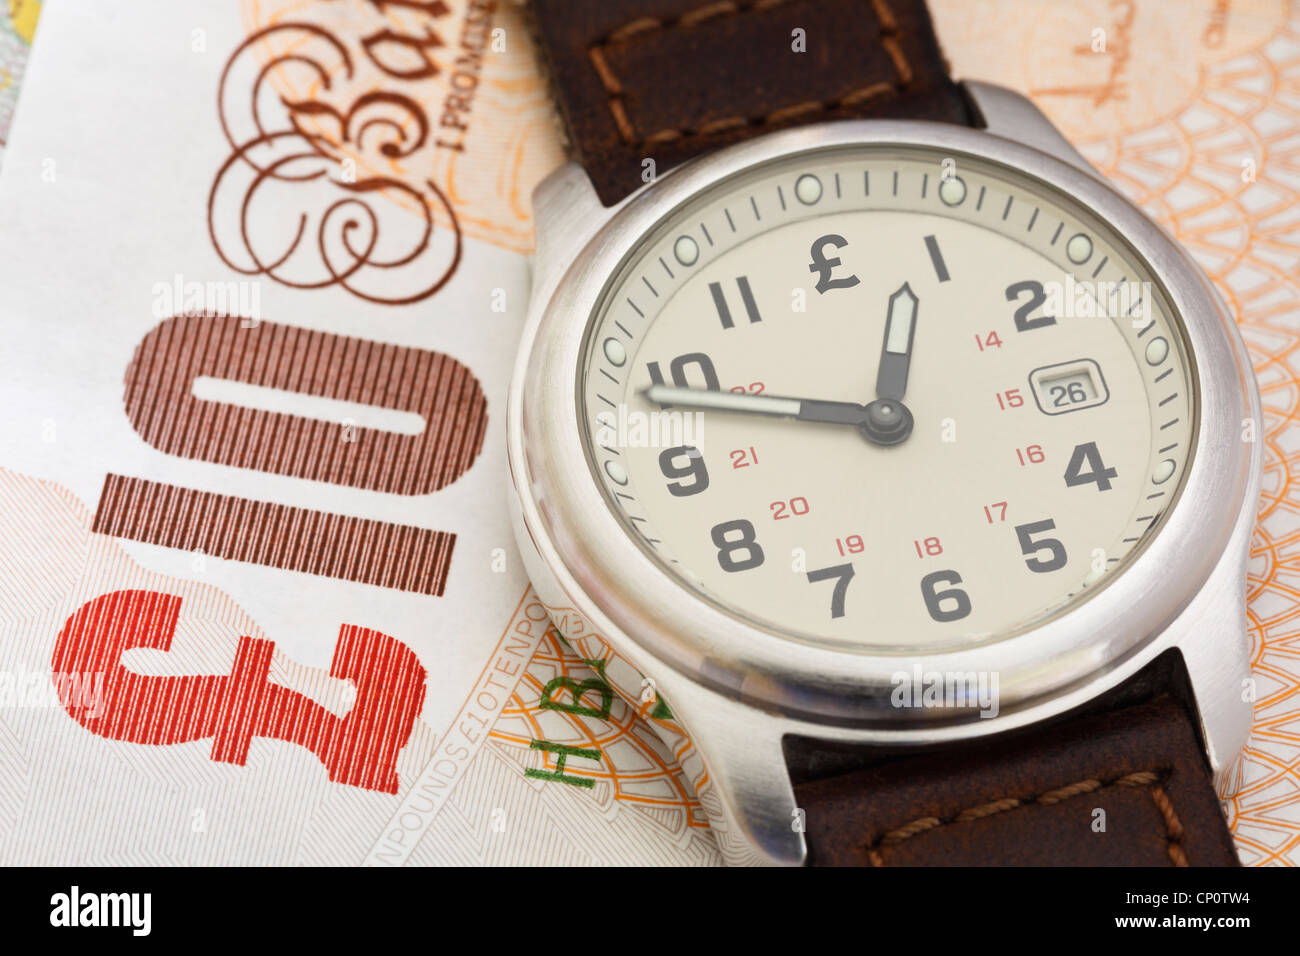 Armbanduhr Uhr mit Sterling zehn Pfund Hinweis GBP Zeit Geld in eine Pension Konzept zu veranschaulichen. England, Großbritannien, Großbritannien Stockfoto